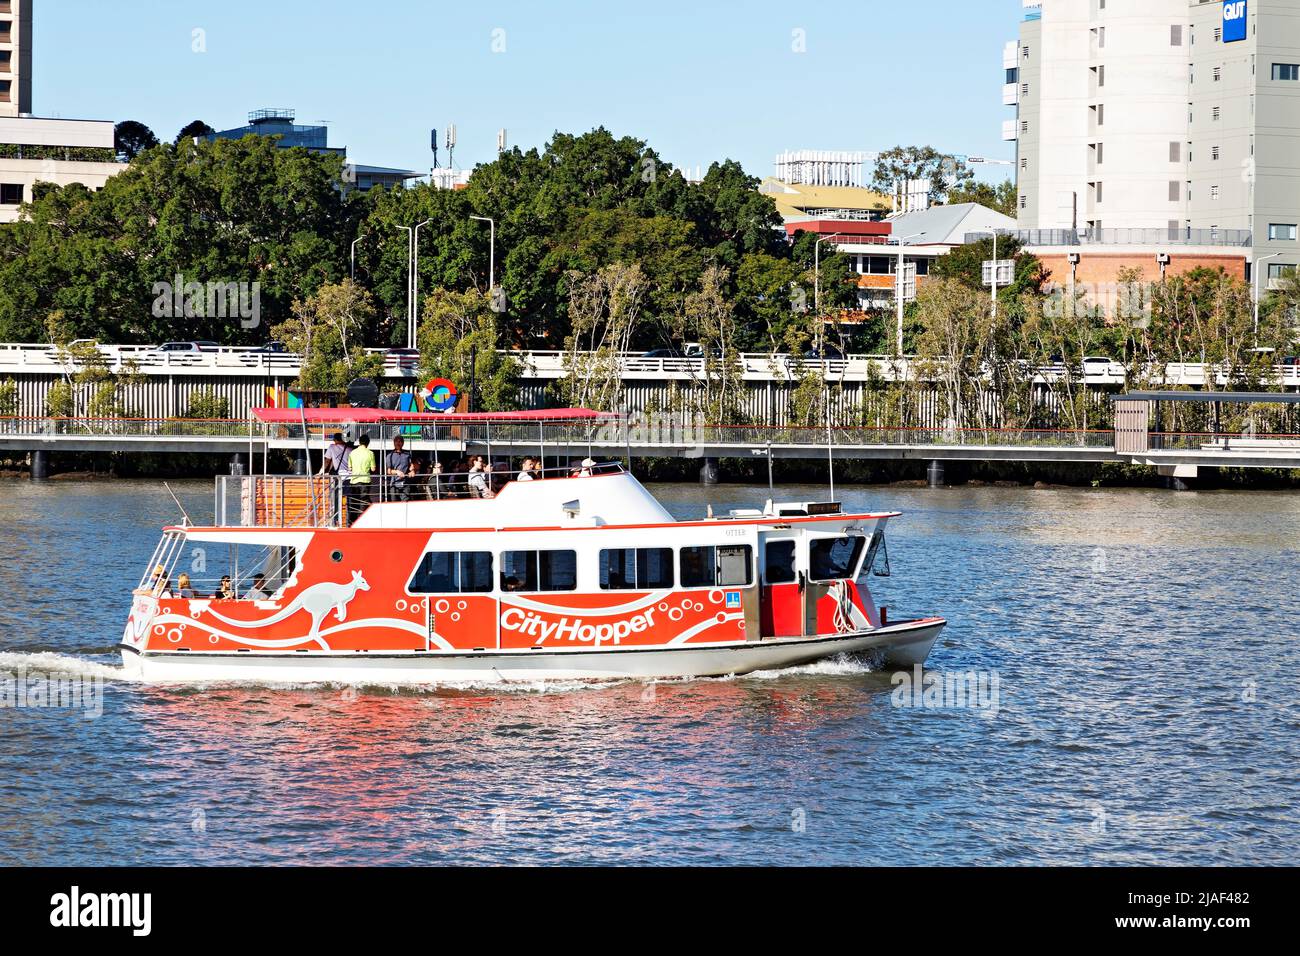 Brisbane Australie / le ferry City Hopper transporte des passagers le long du fleuve Brisbane. Banque D'Images